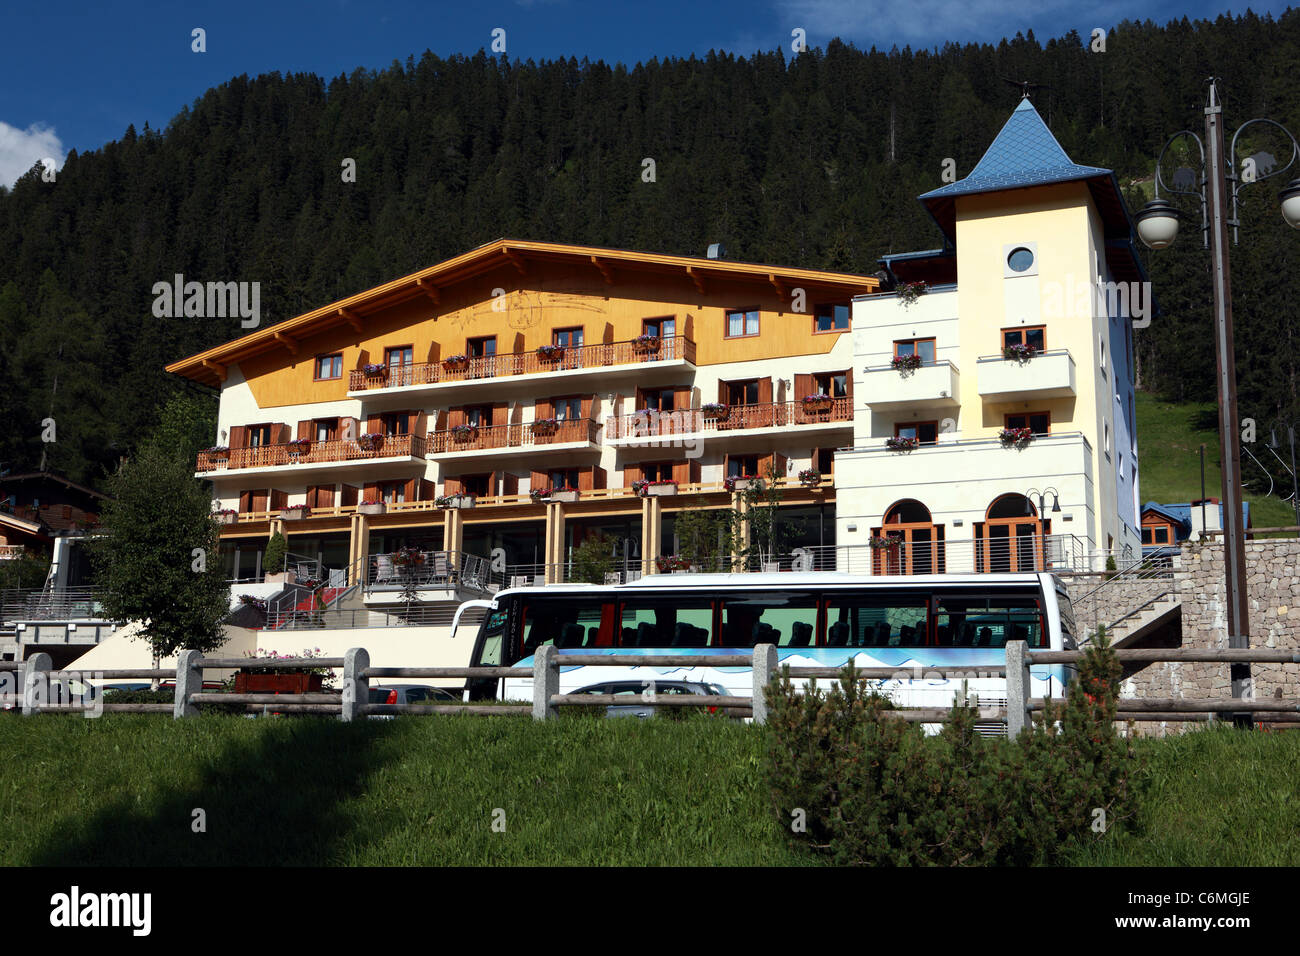 Hotel Oberosler in the ski resort of Madonna di Campiglio in the Val Rendena in Italy Stock Photo